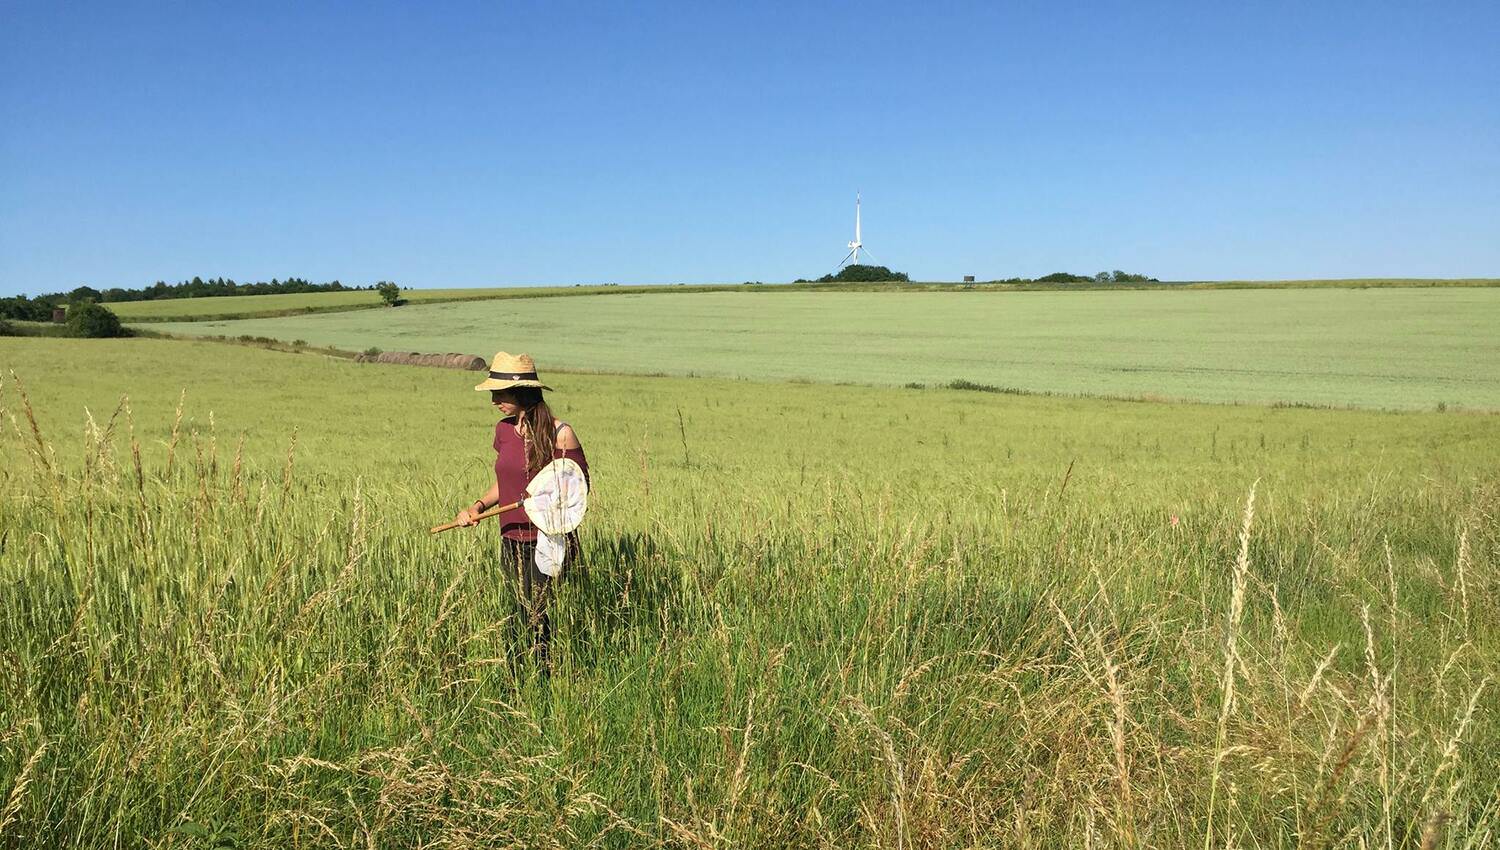 Forsker Costanza Geppert står på en mark hvor hun er ved at indsamle bier med et net